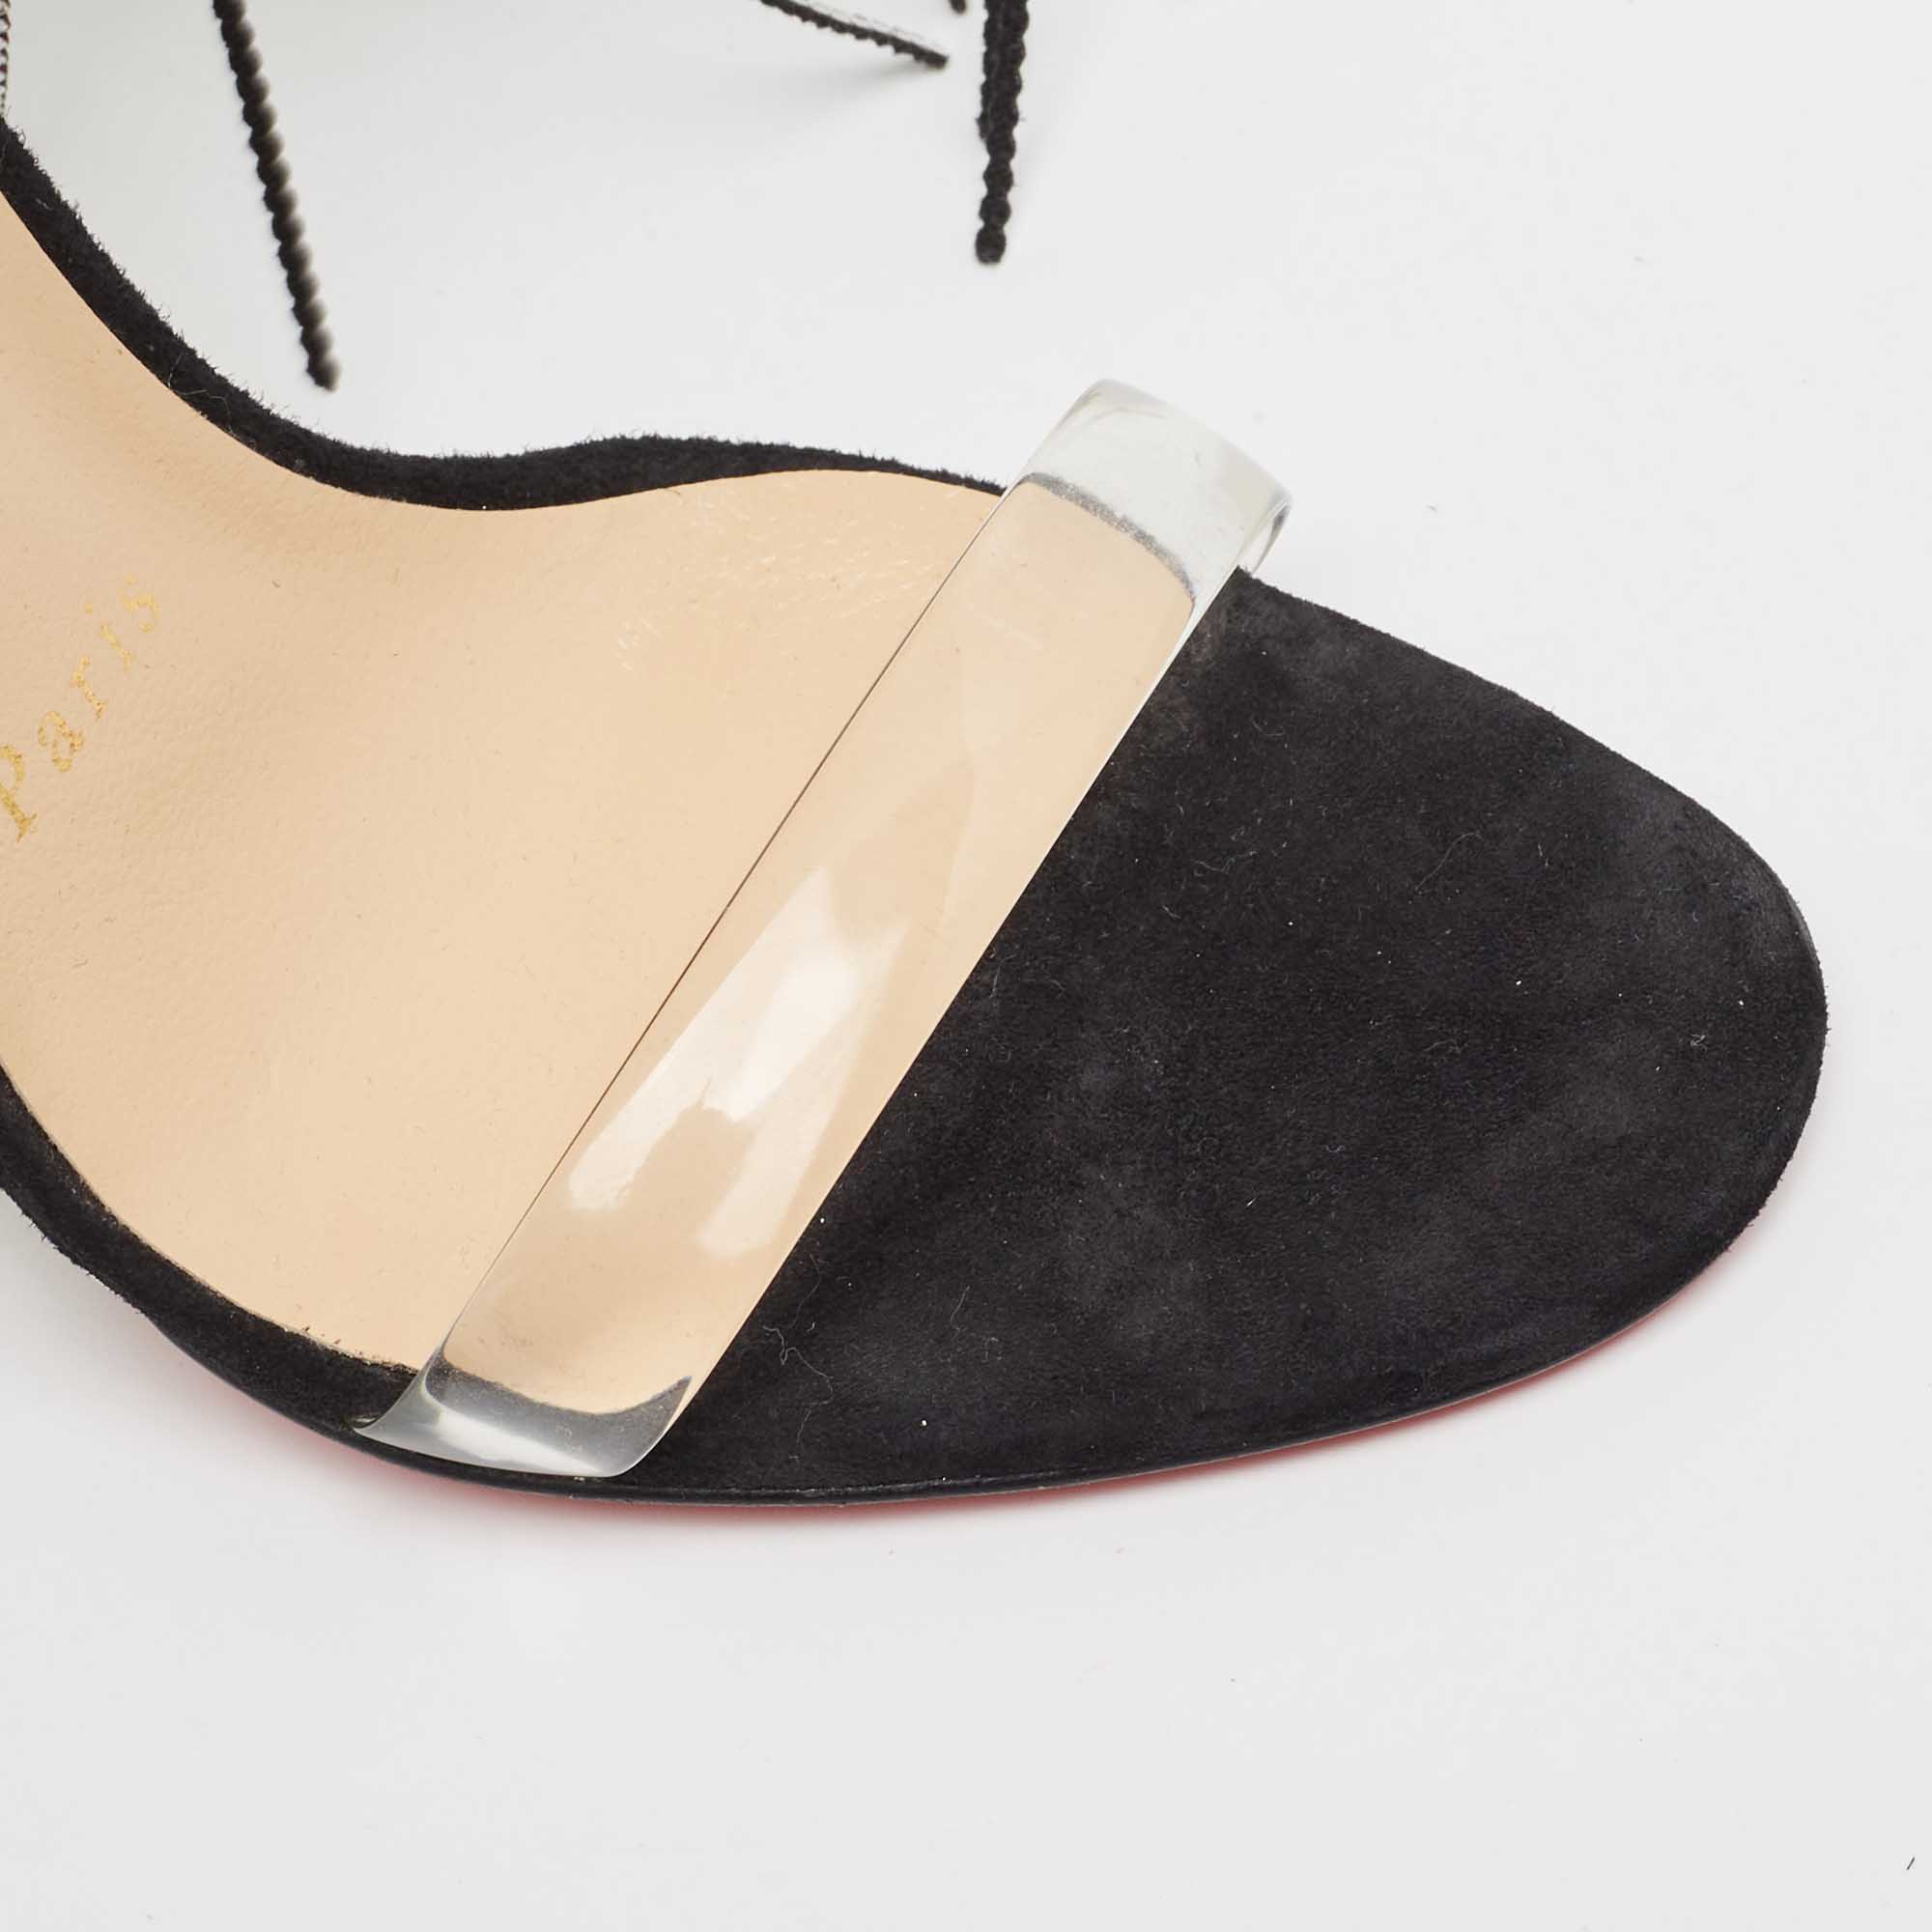 Christian Louboutin Black Suede Crystal Embellished Fringe Ankle Strap Sandals Size 36